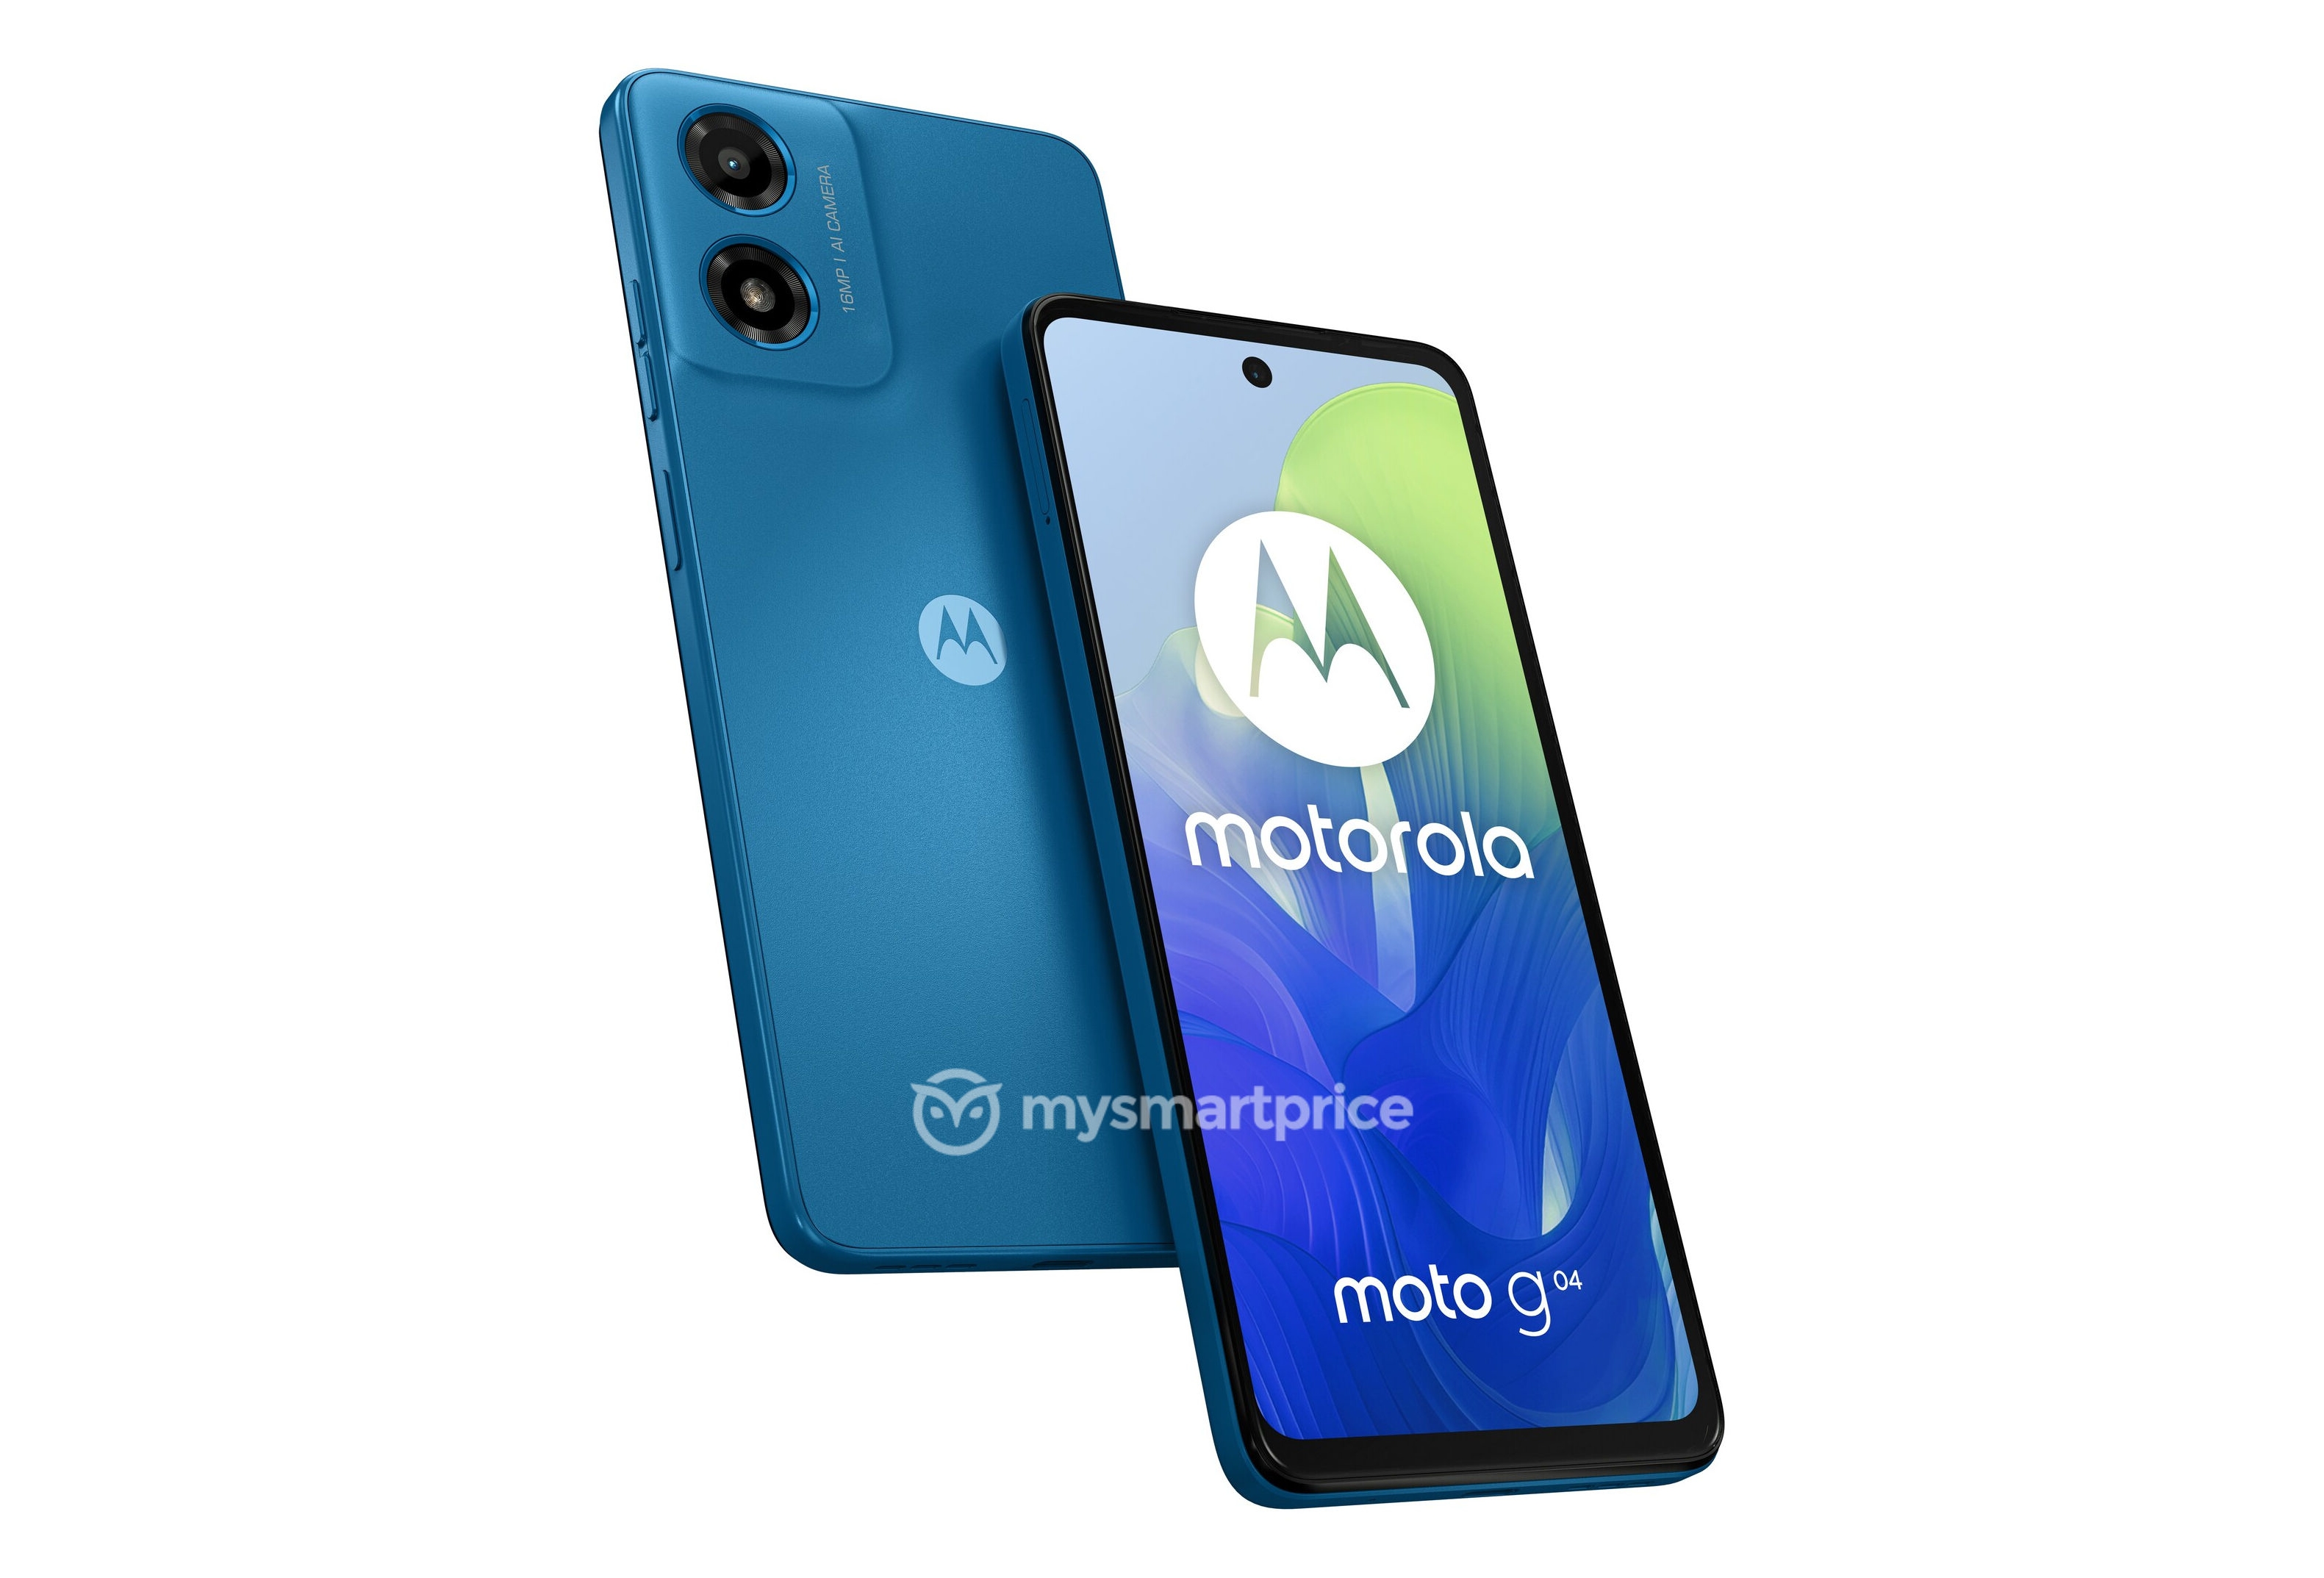 Motorola se prepara para lanzar un smartphone económico Moto G04 con una cámara de 16 MP